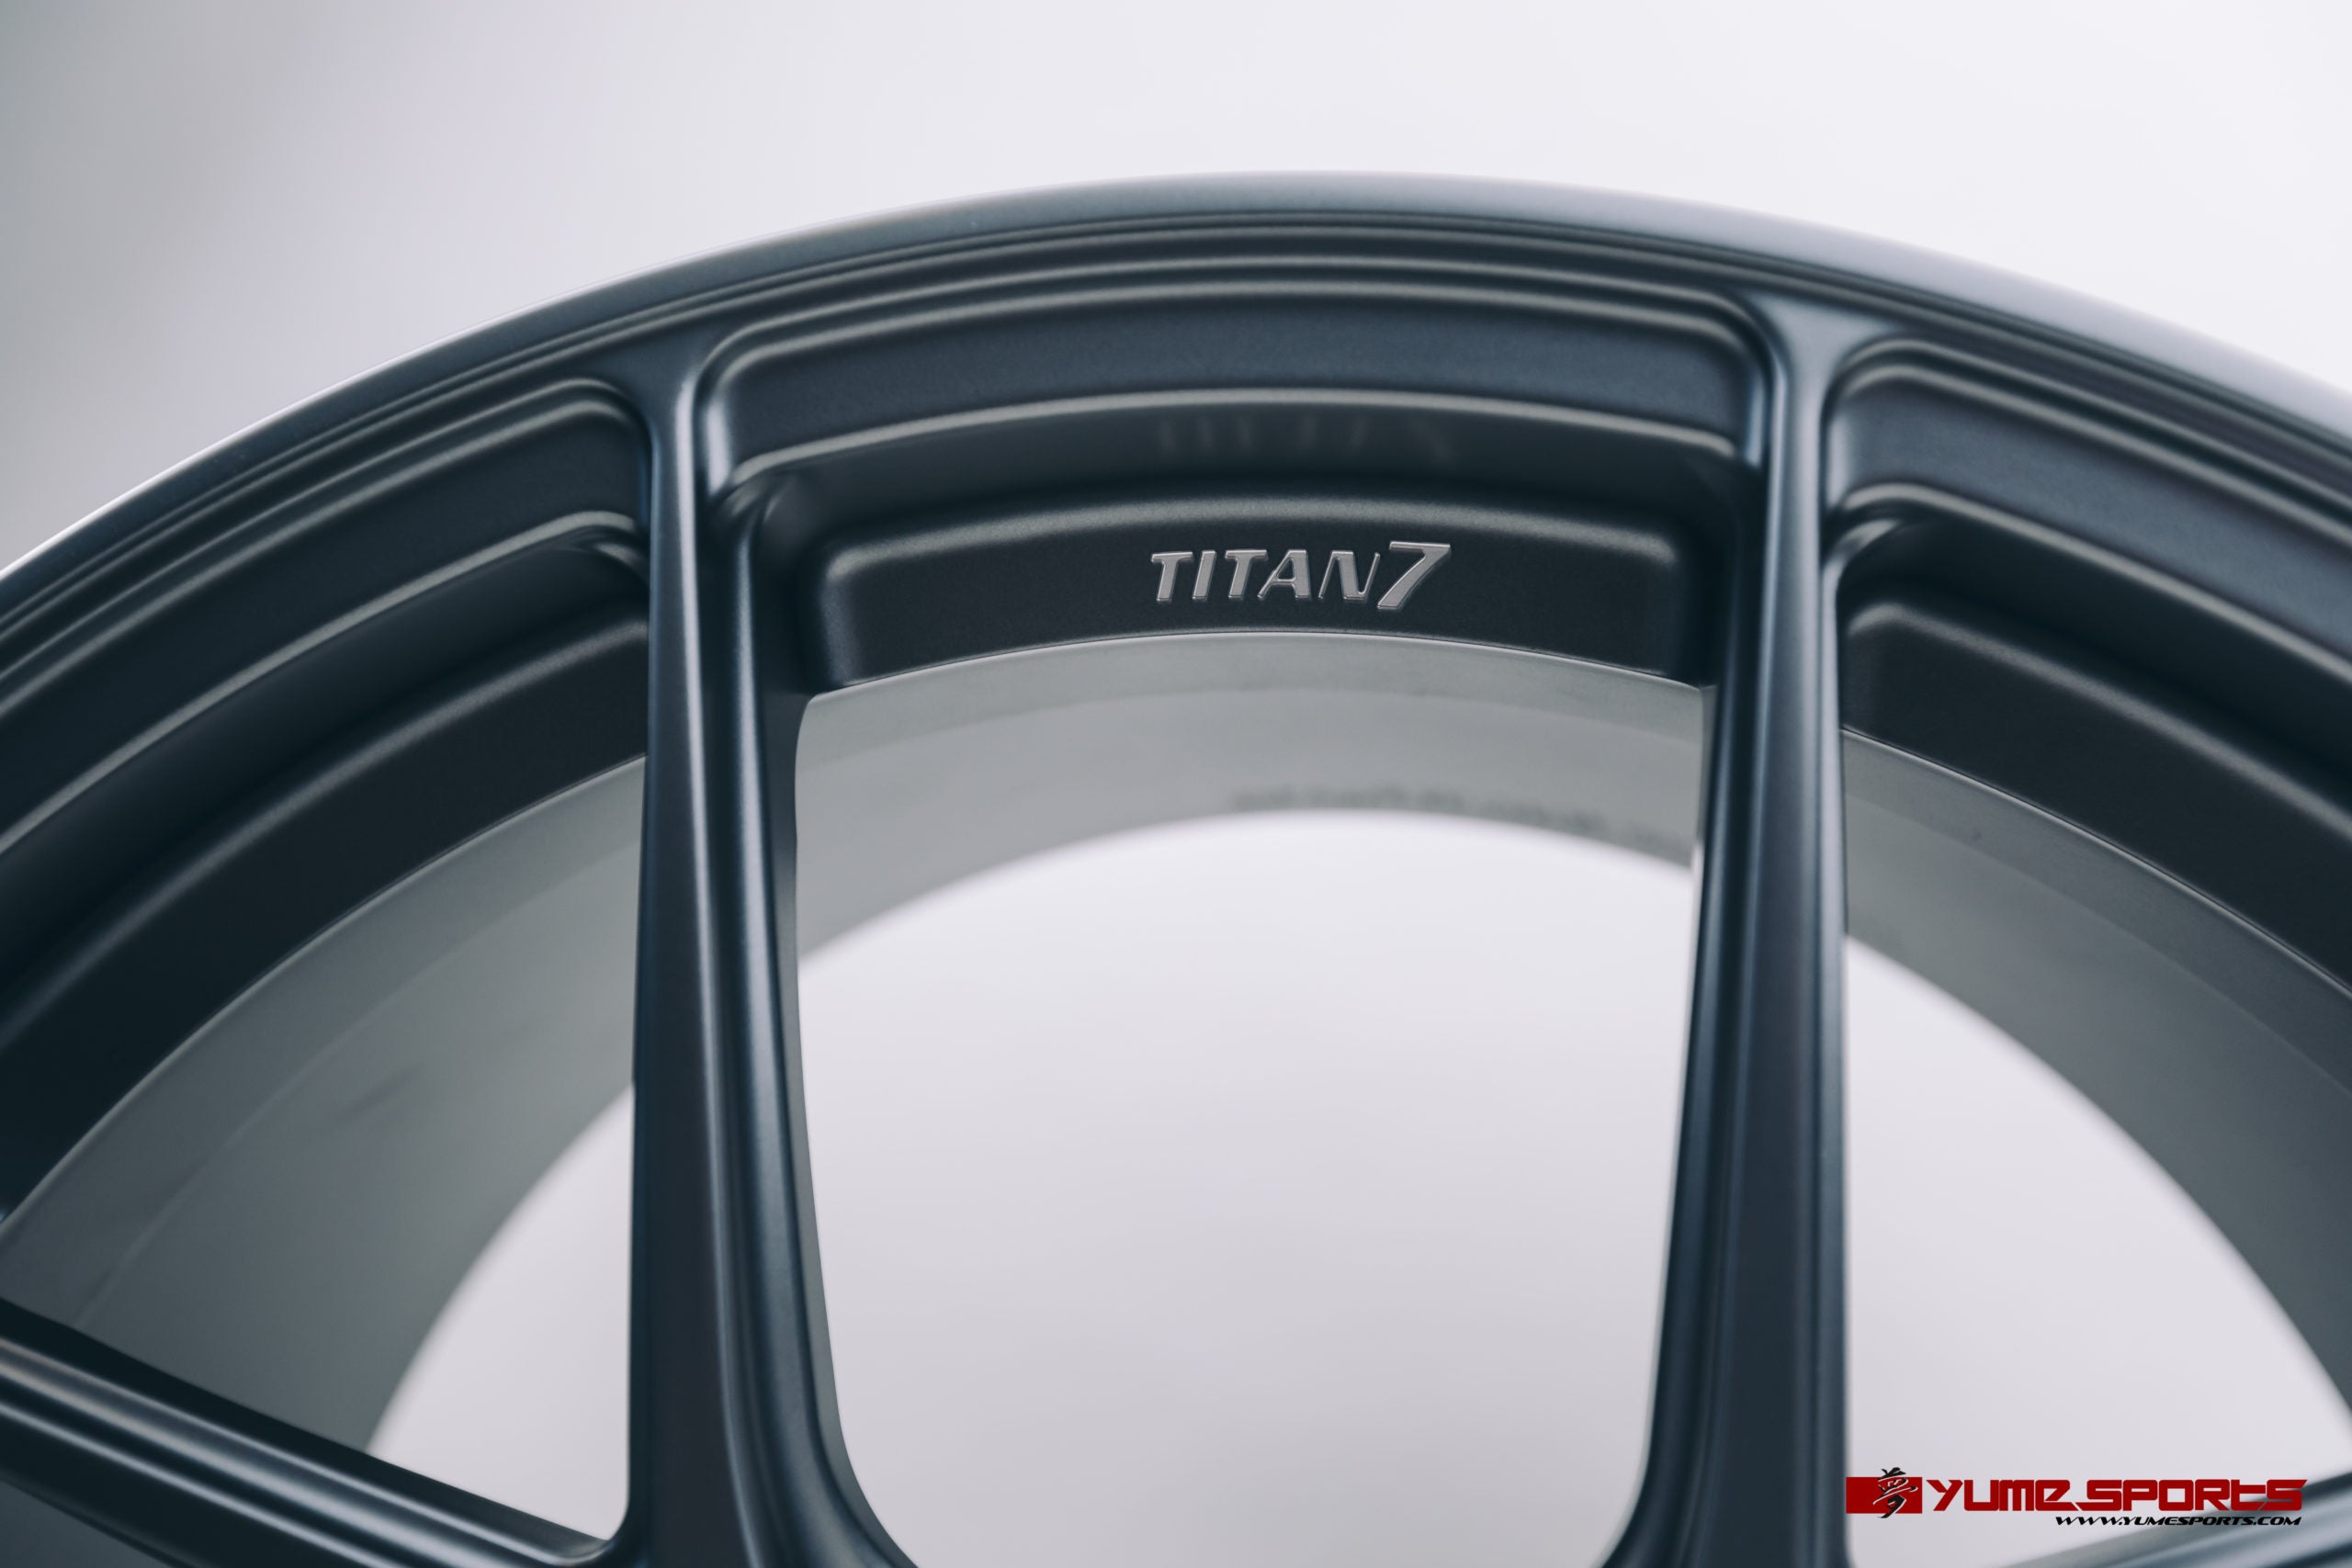 Titan 7 - T-S5 Wheel, 17x9.5 +57, 5x114.3, Satin Titanium